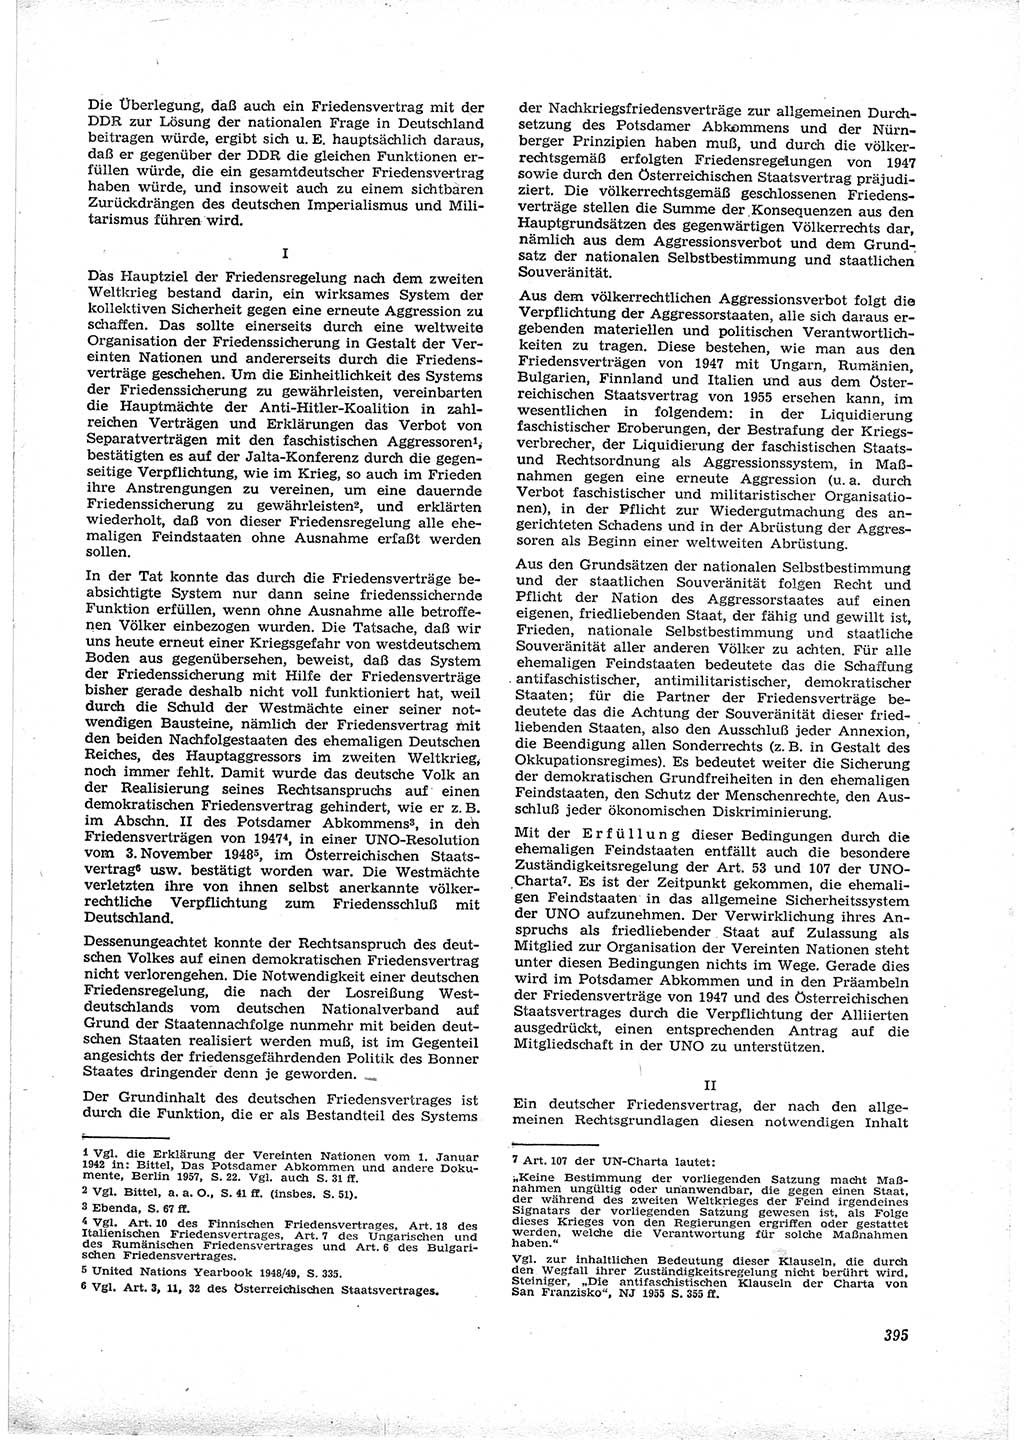 Neue Justiz (NJ), Zeitschrift für Recht und Rechtswissenschaft [Deutsche Demokratische Republik (DDR)], 16. Jahrgang 1962, Seite 395 (NJ DDR 1962, S. 395)